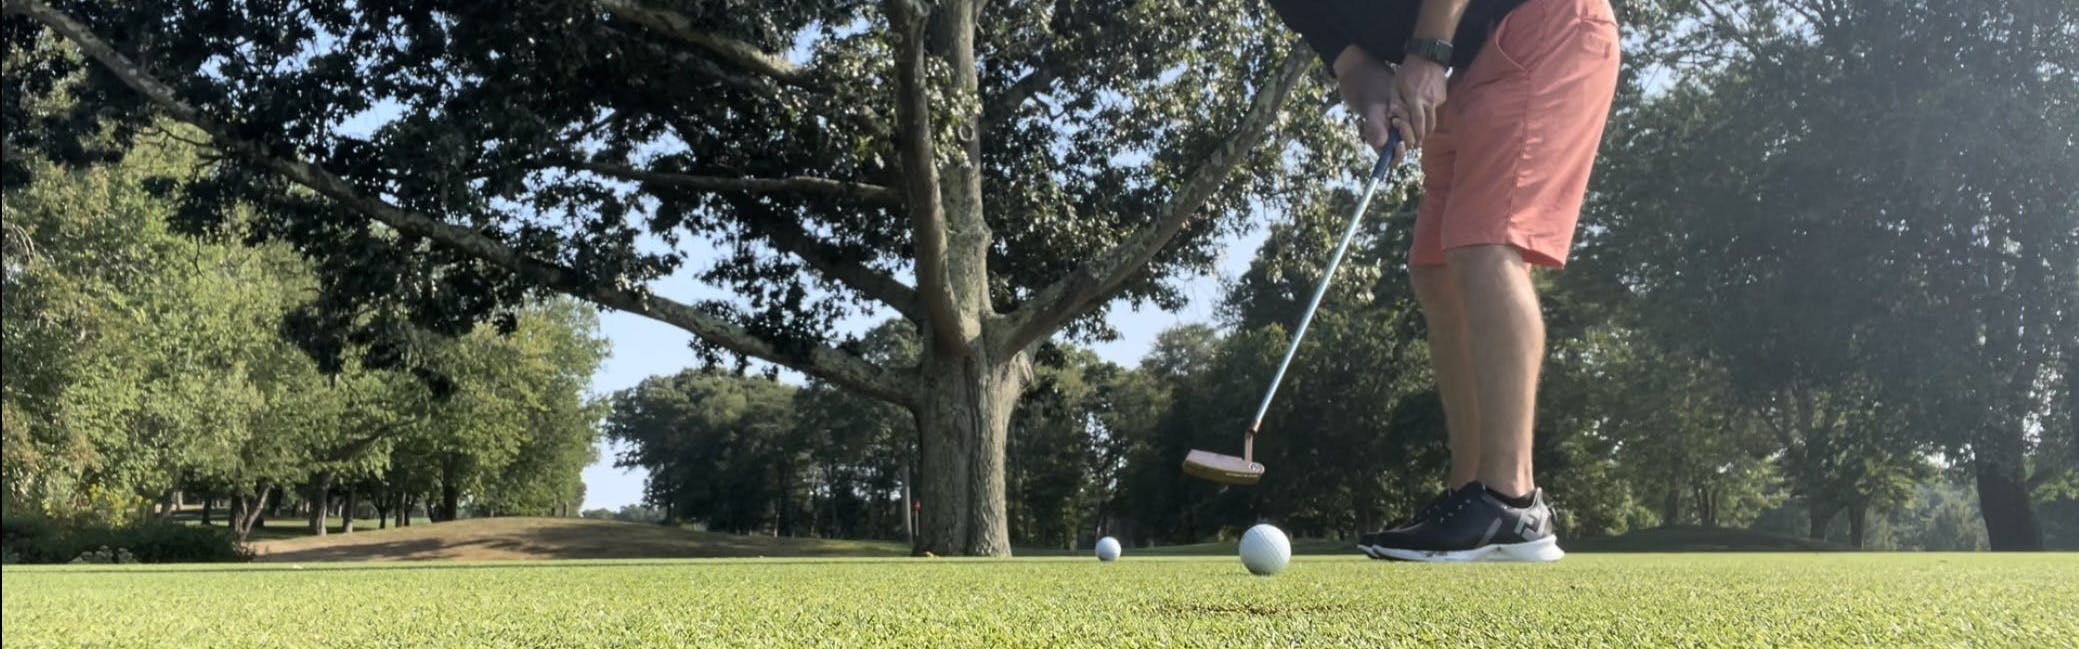 A man putts a golf ball on a course.